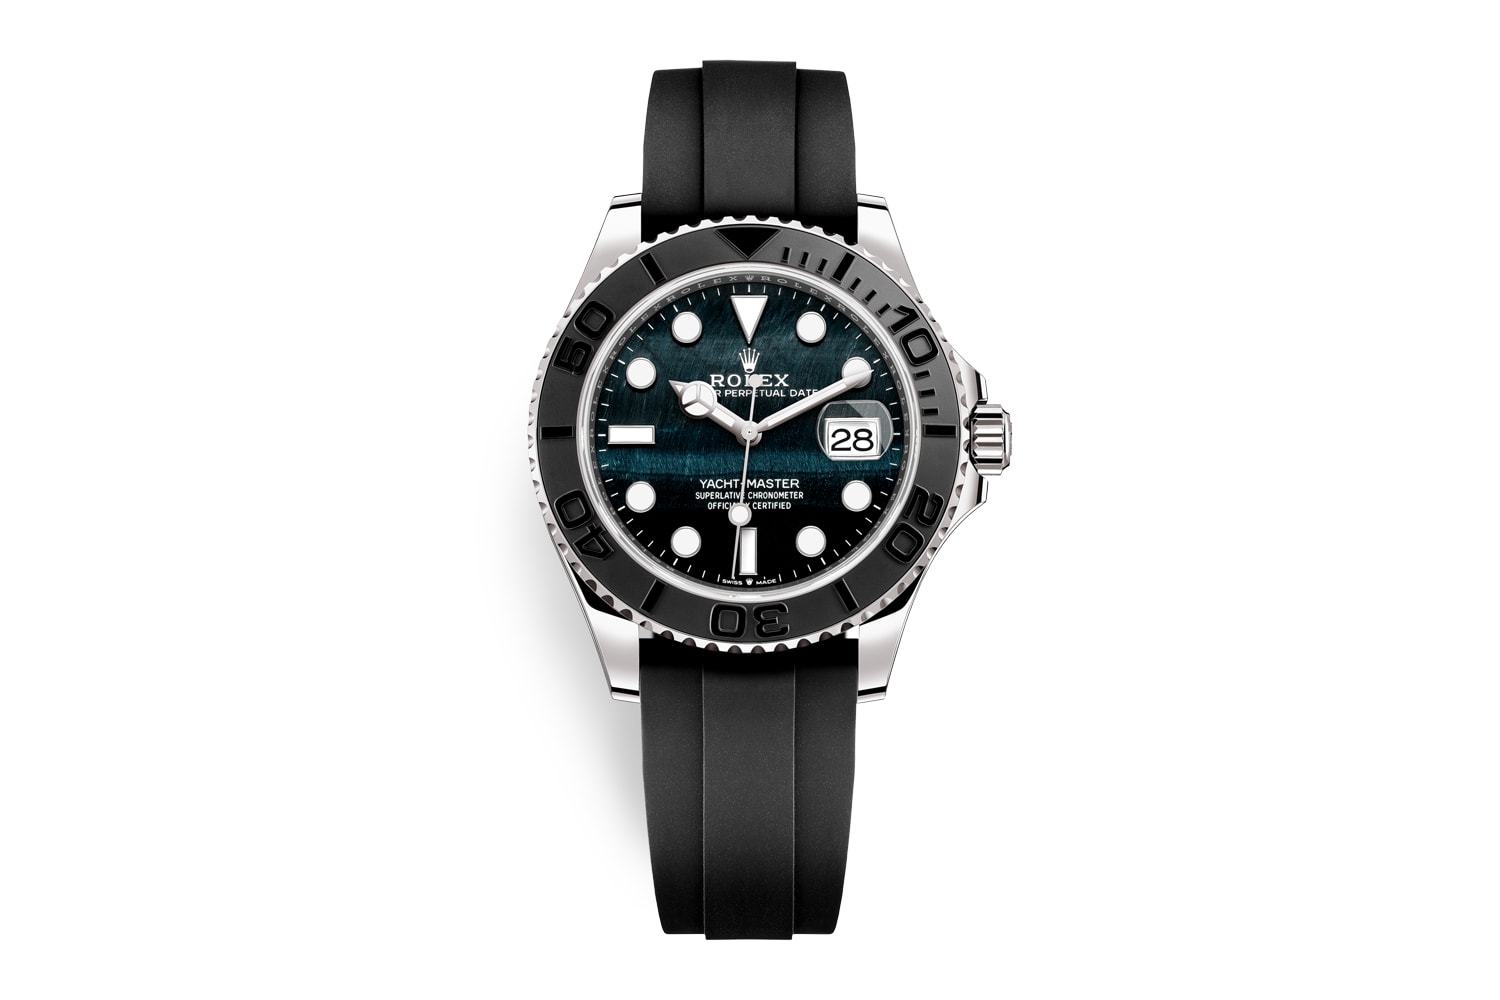 ロレックスが2022年の新作コレクションを発表 rolex accessories collectibles watches and wonders 2022 collection releases gmt master ii yacht deepsea air king datejust day date 